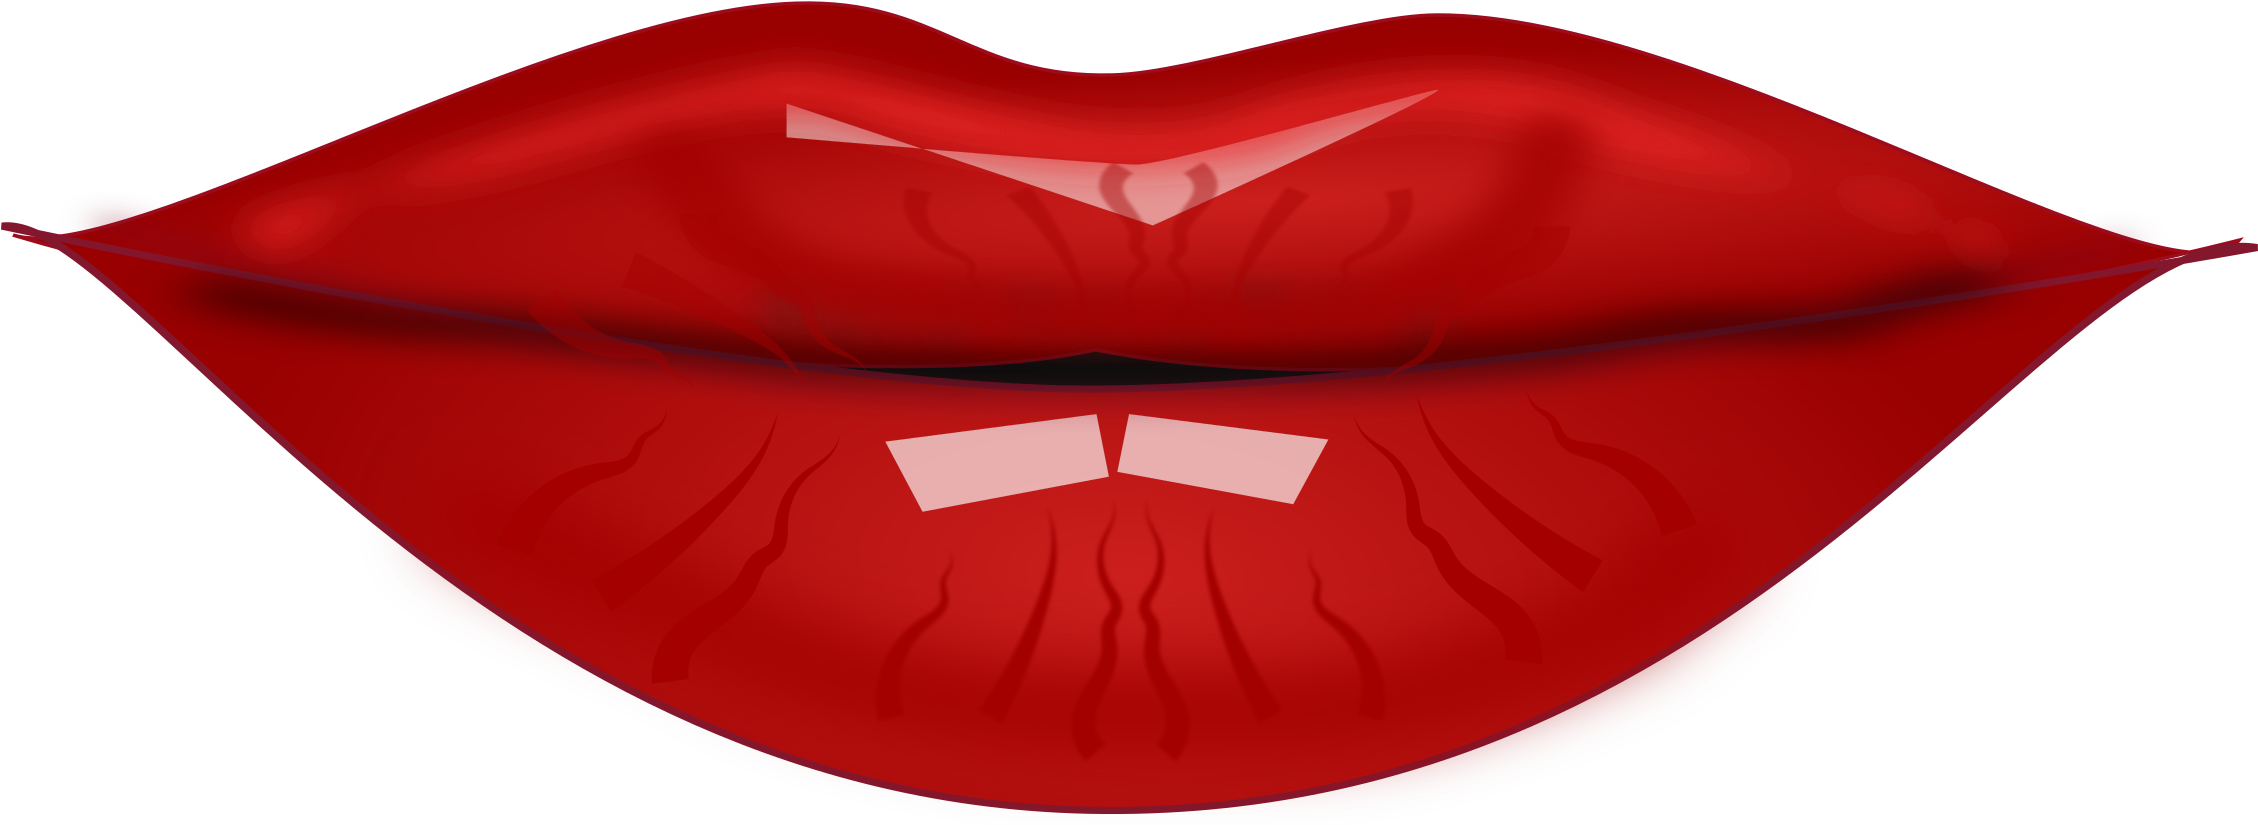 Lip Clip Art Images Clipart - Cartoon Images Of Lip (2400x1800)